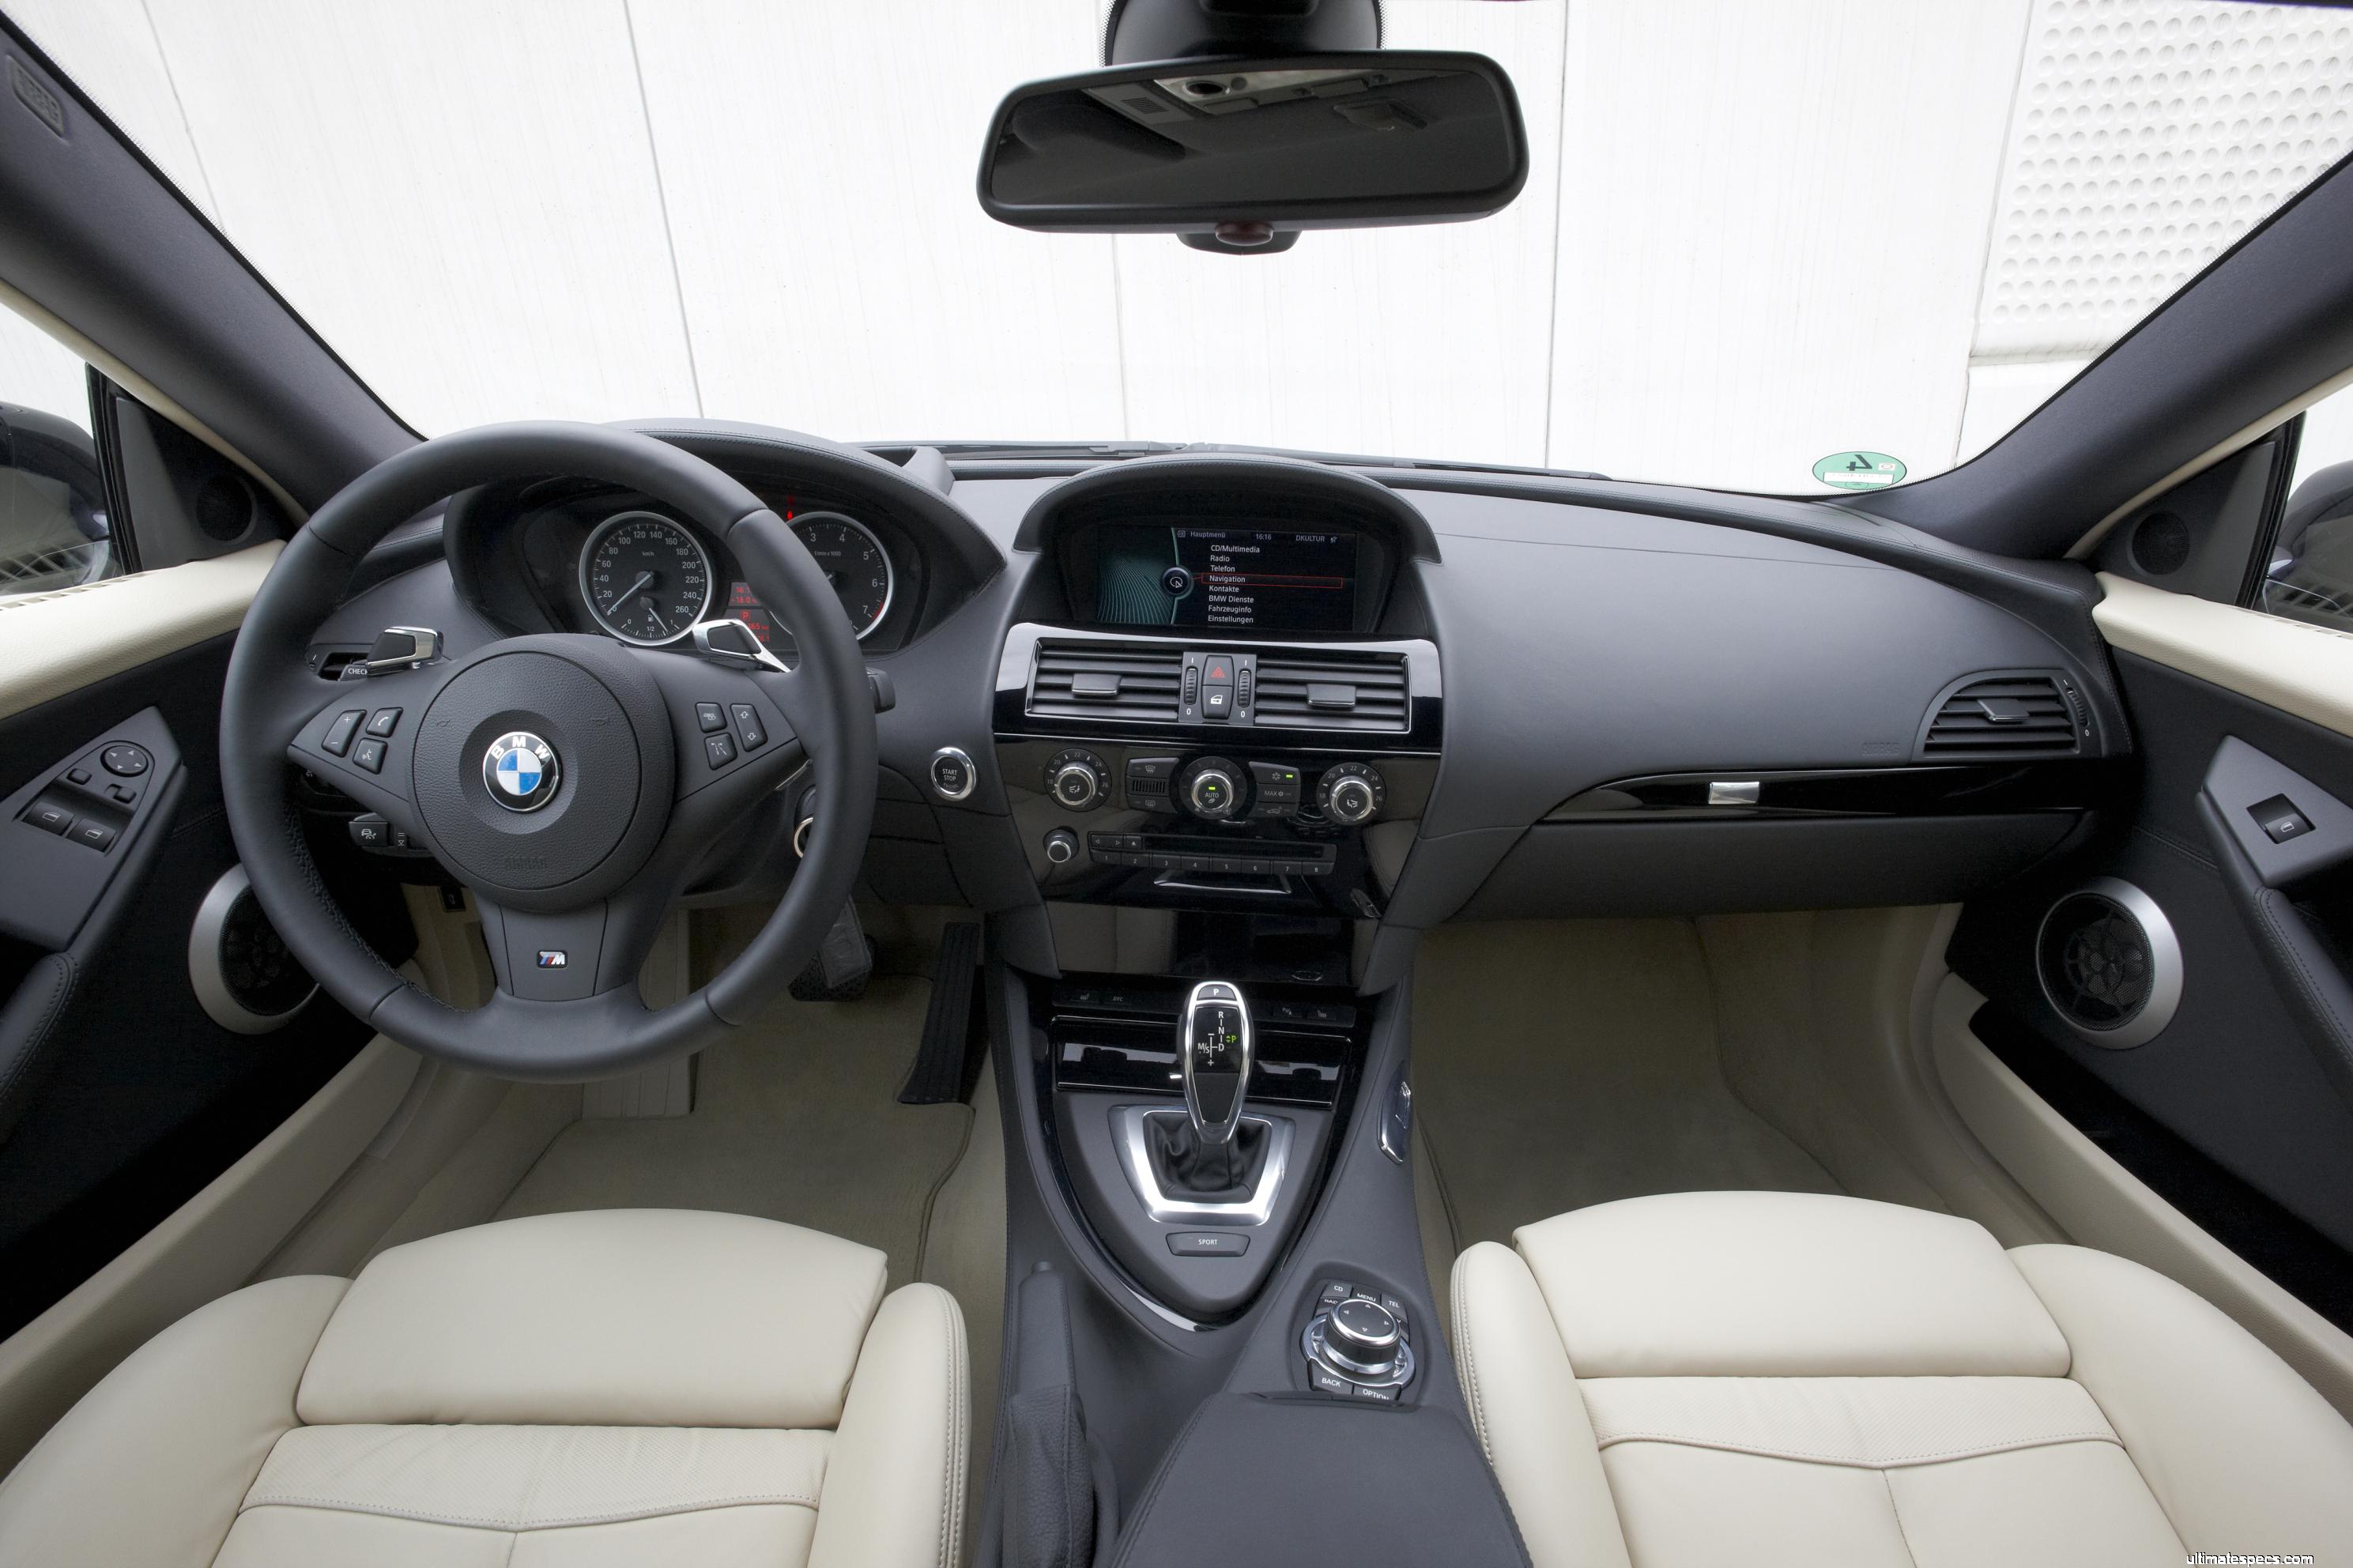 BMW E63 6 Series Coupe LCI